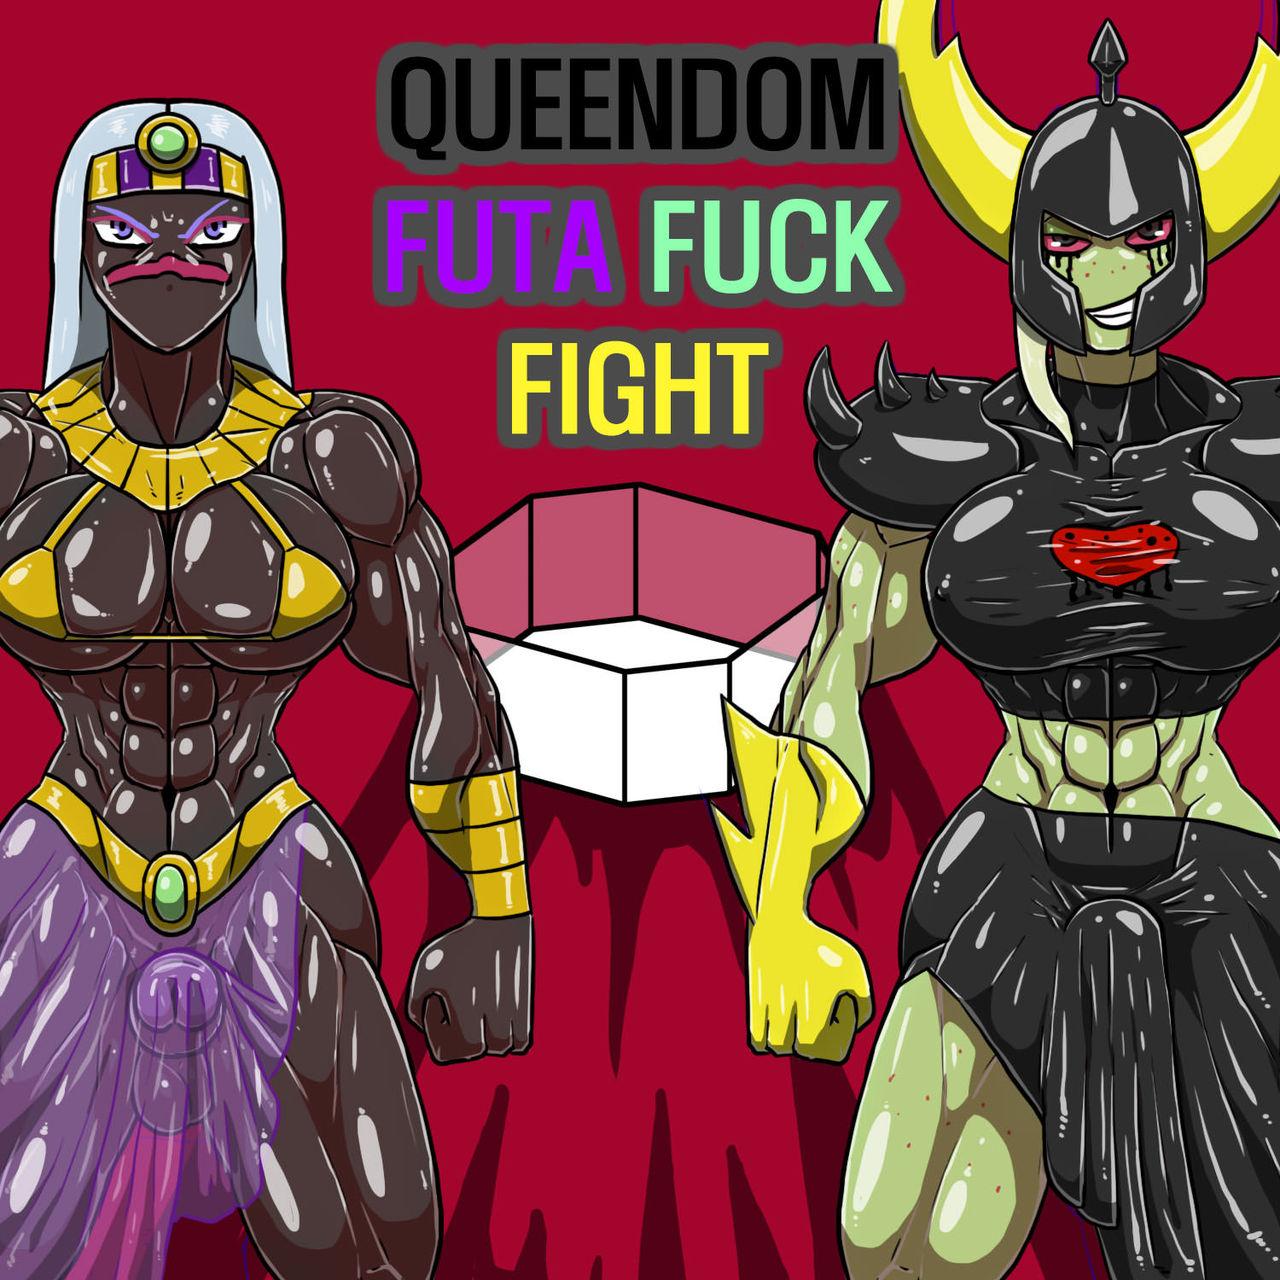 Queendom Futa Fuck Fight 1